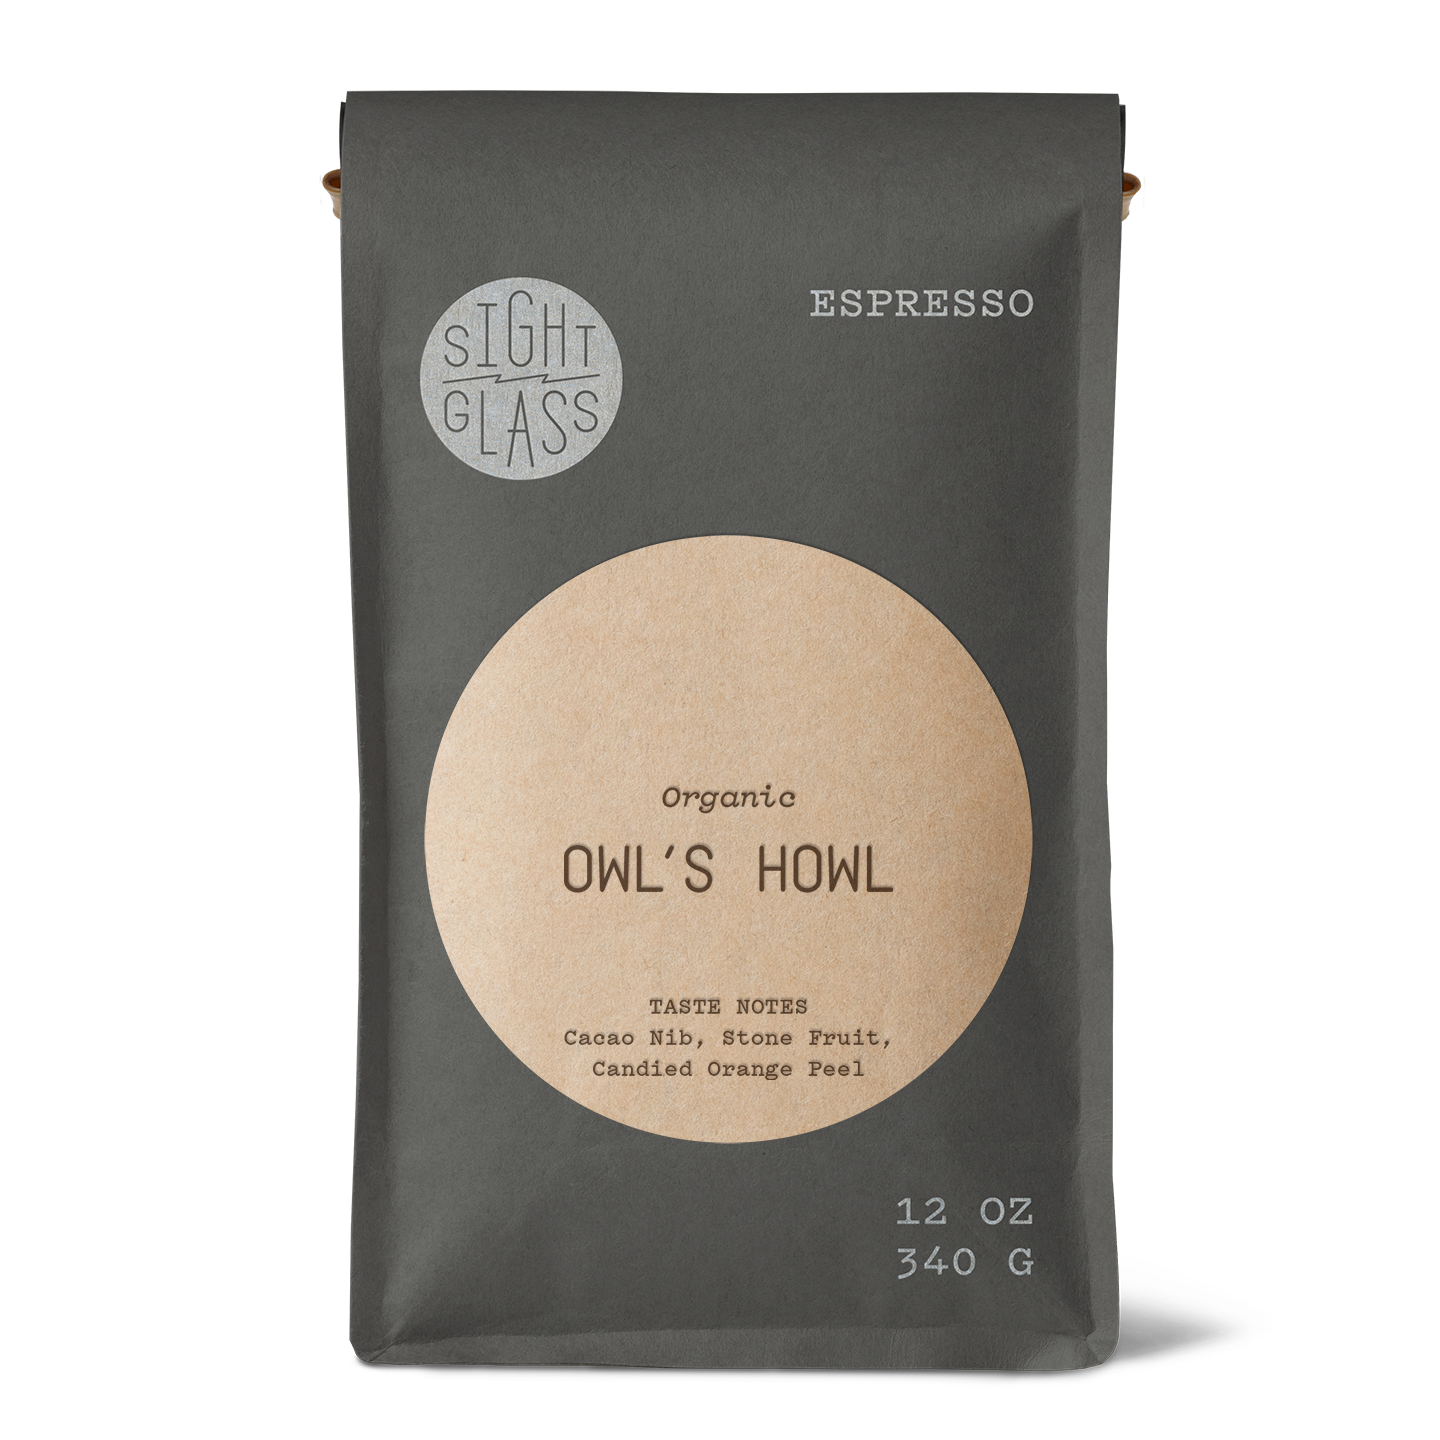 Organic Owl's Howl Espresso